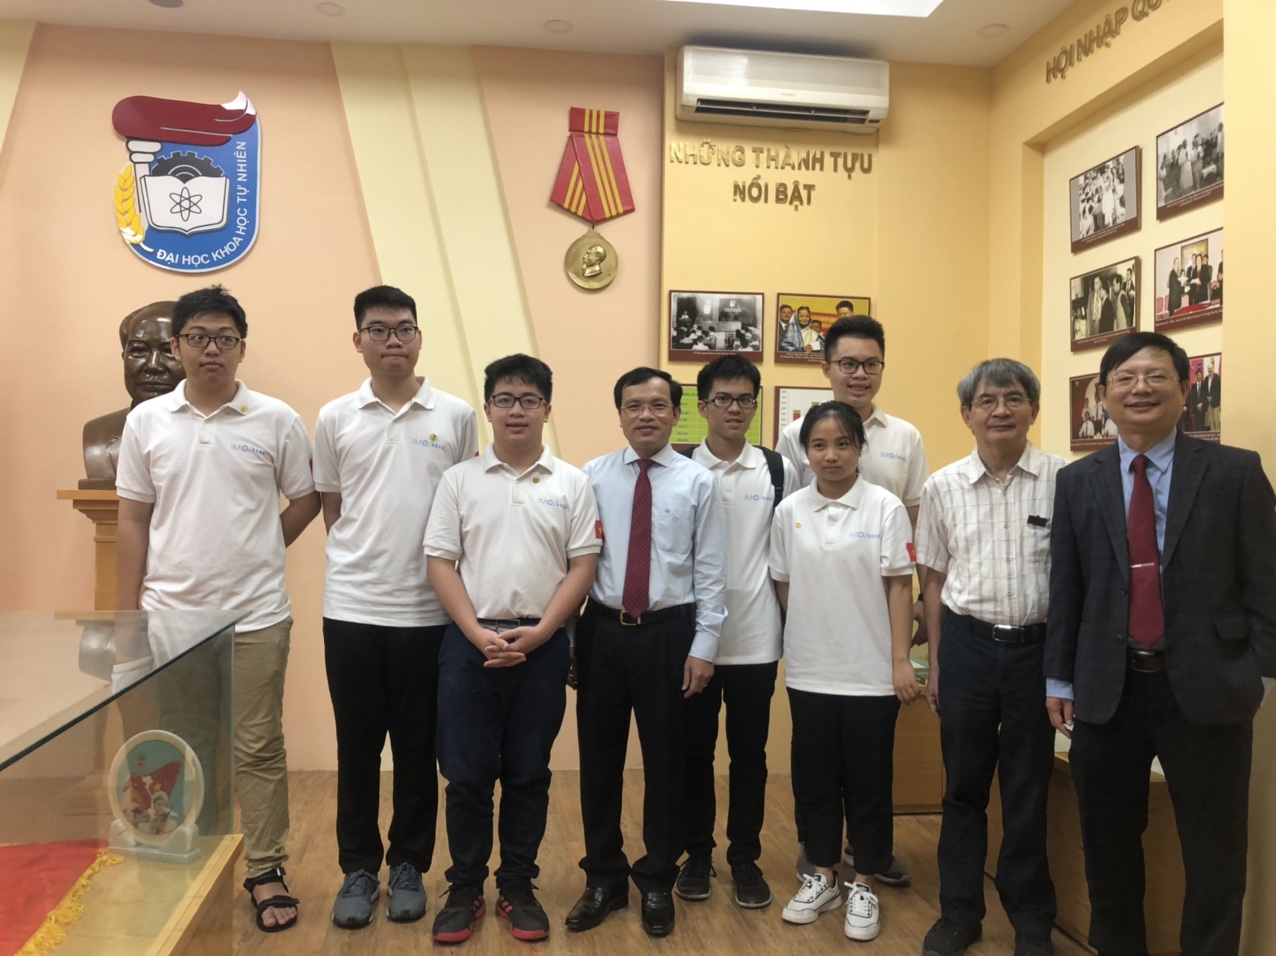 Đội tuyển quốc gia Việt Nam dự thi tại Trường Đại học Khoa học Tự nhiên, Đại học Quốc gia Hà Nội. Ảnh: QT.